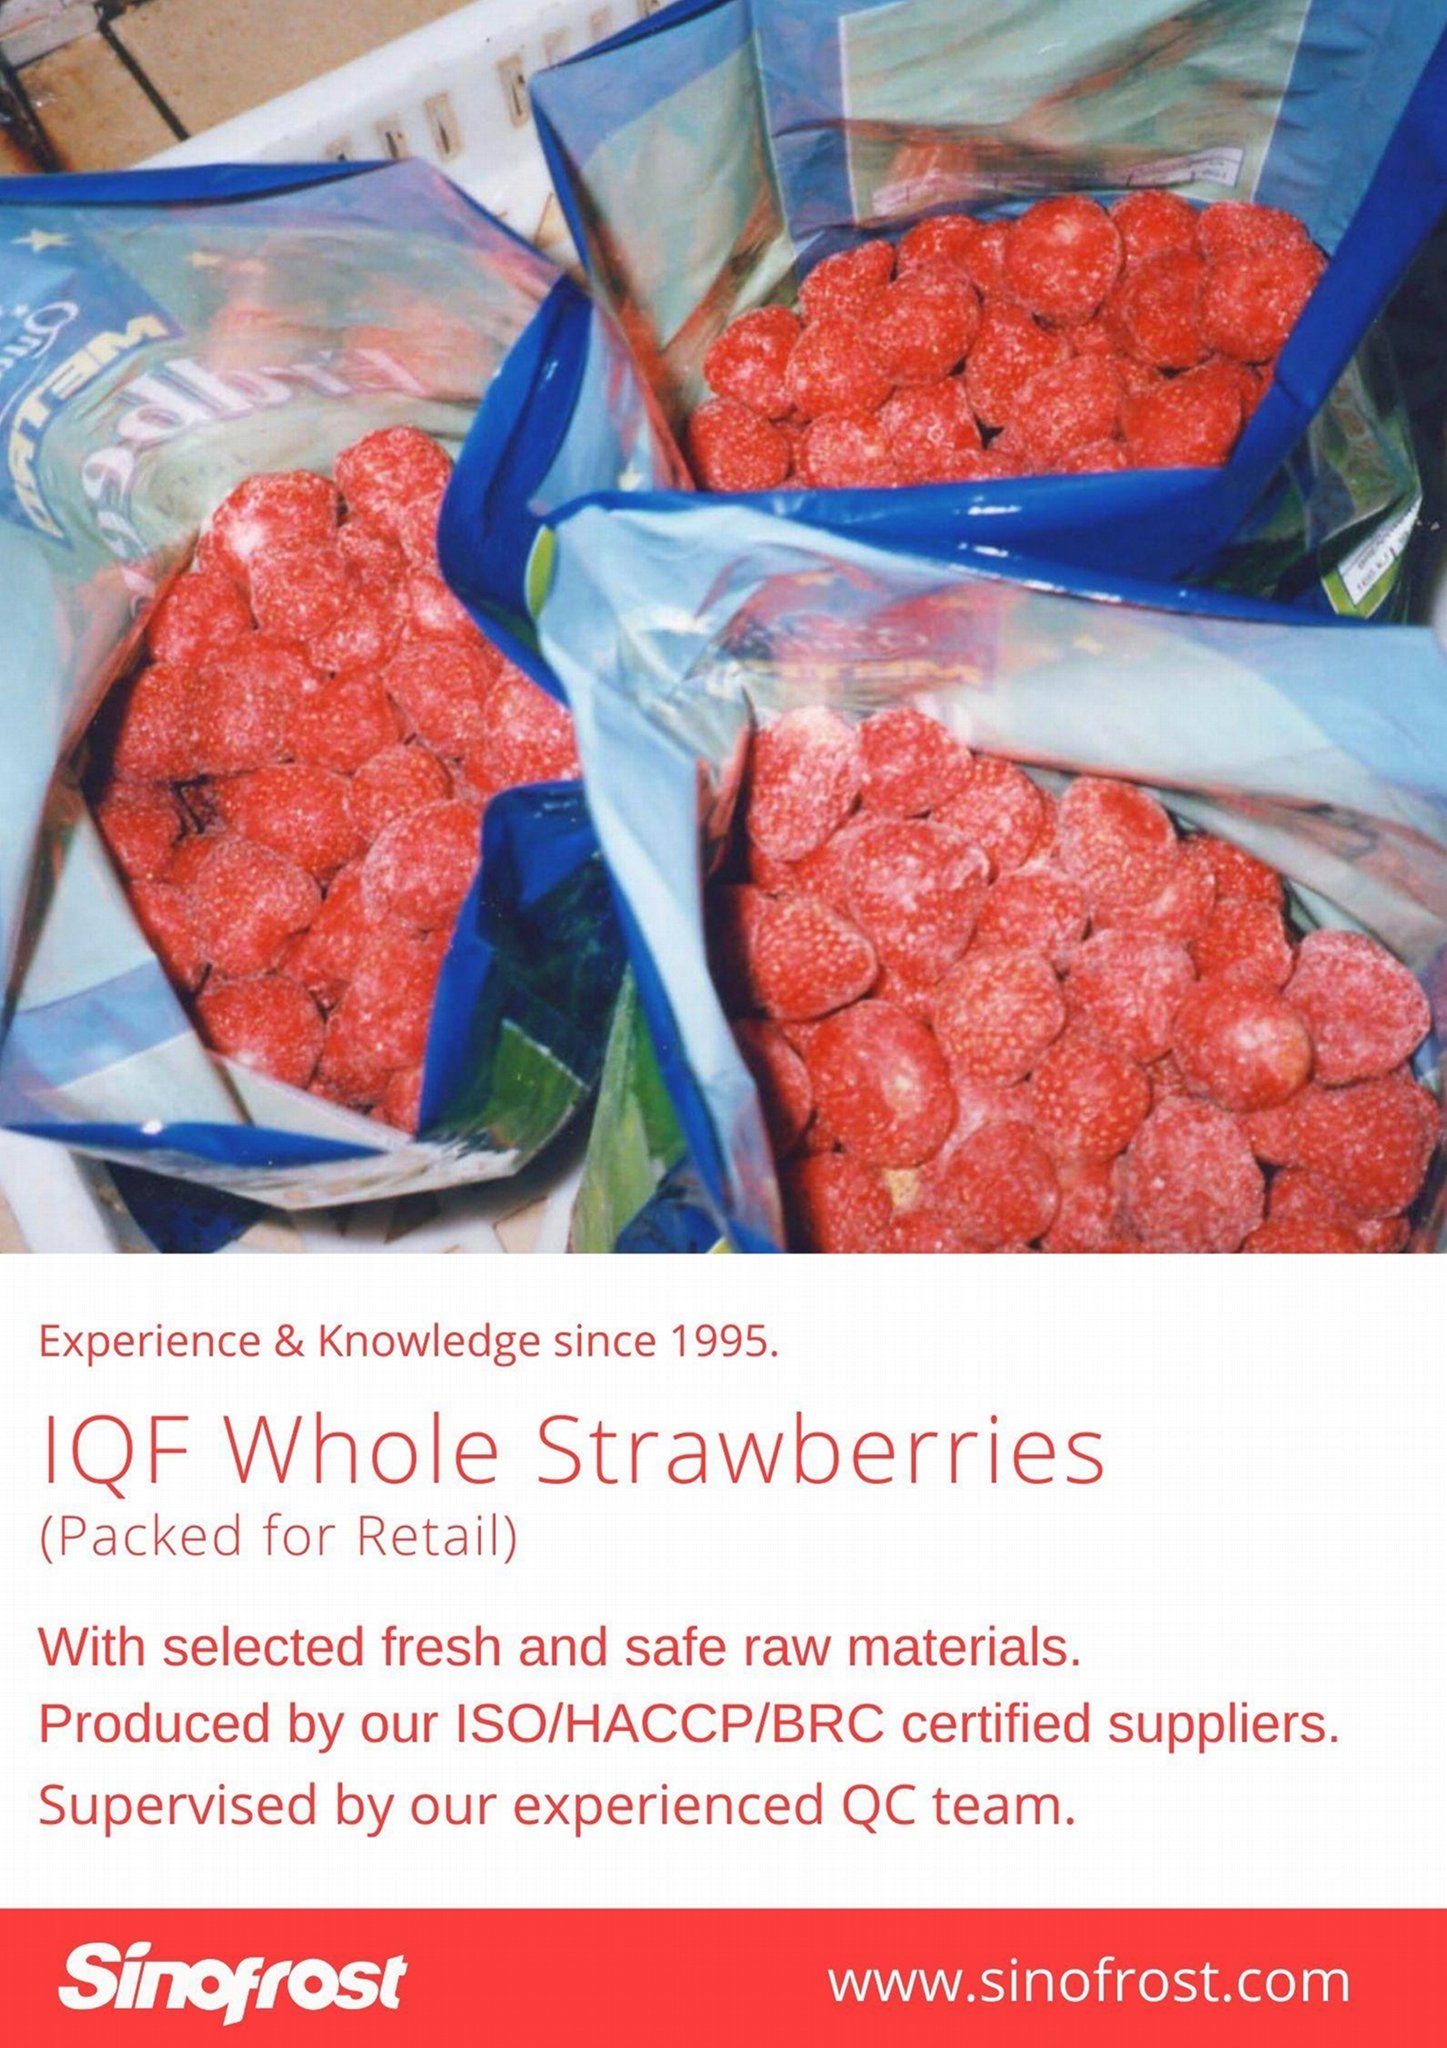 冷凍草莓,速凍草莓,冷凍草莓泥,速凍草莓泥 8